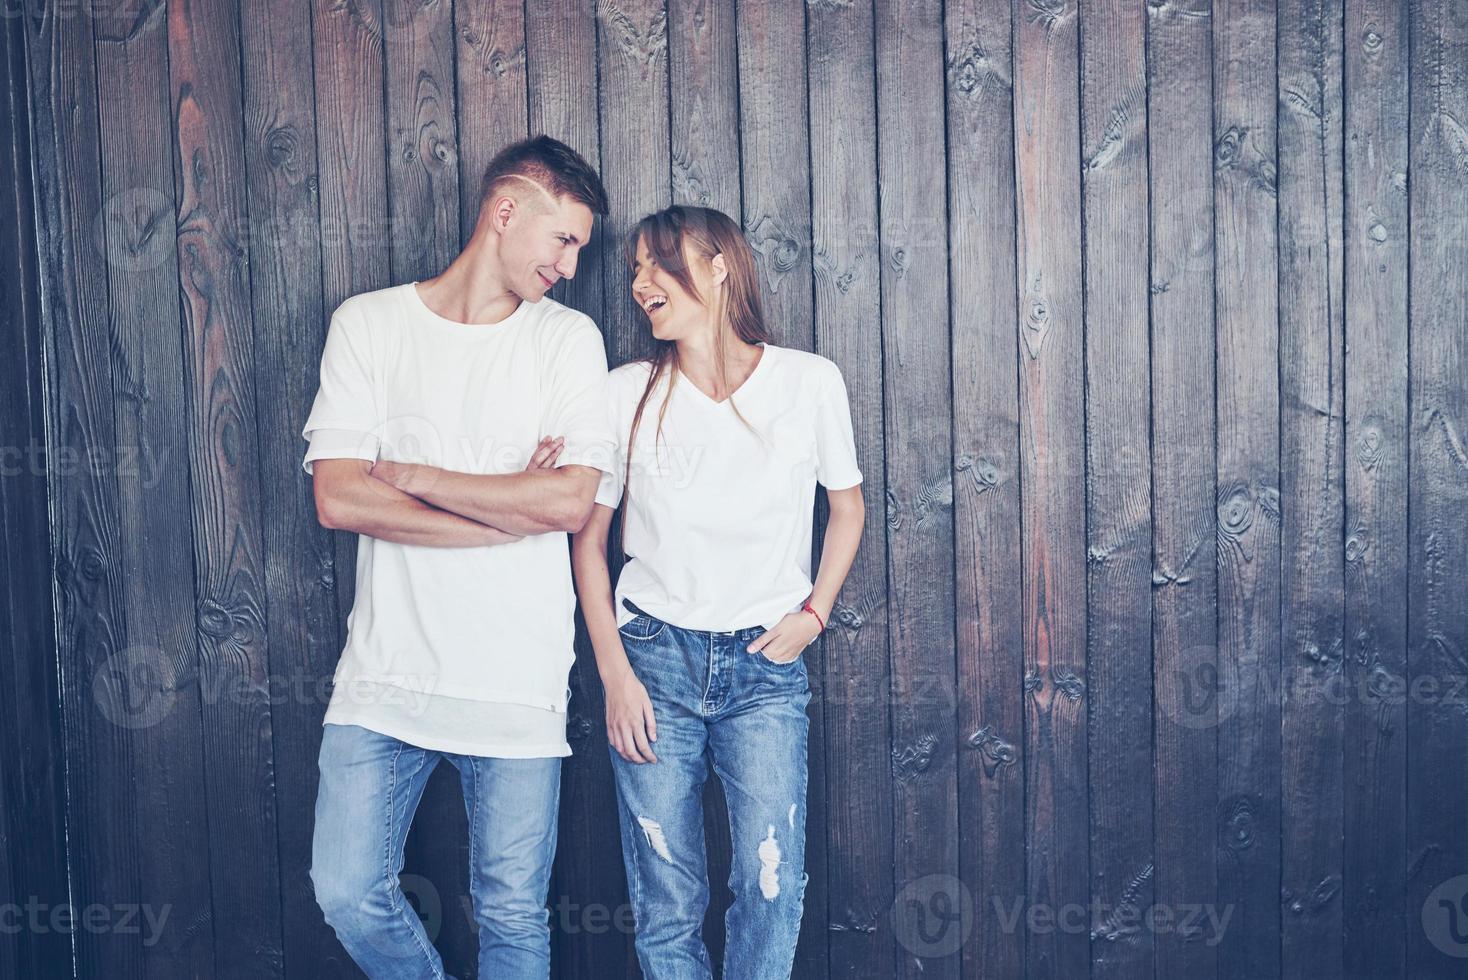 jeune couple, gars et fille ensemble sur un fond de mur en bois. ils sont heureux ensemble et habillés de la même manière. toujours dans la tendance photo